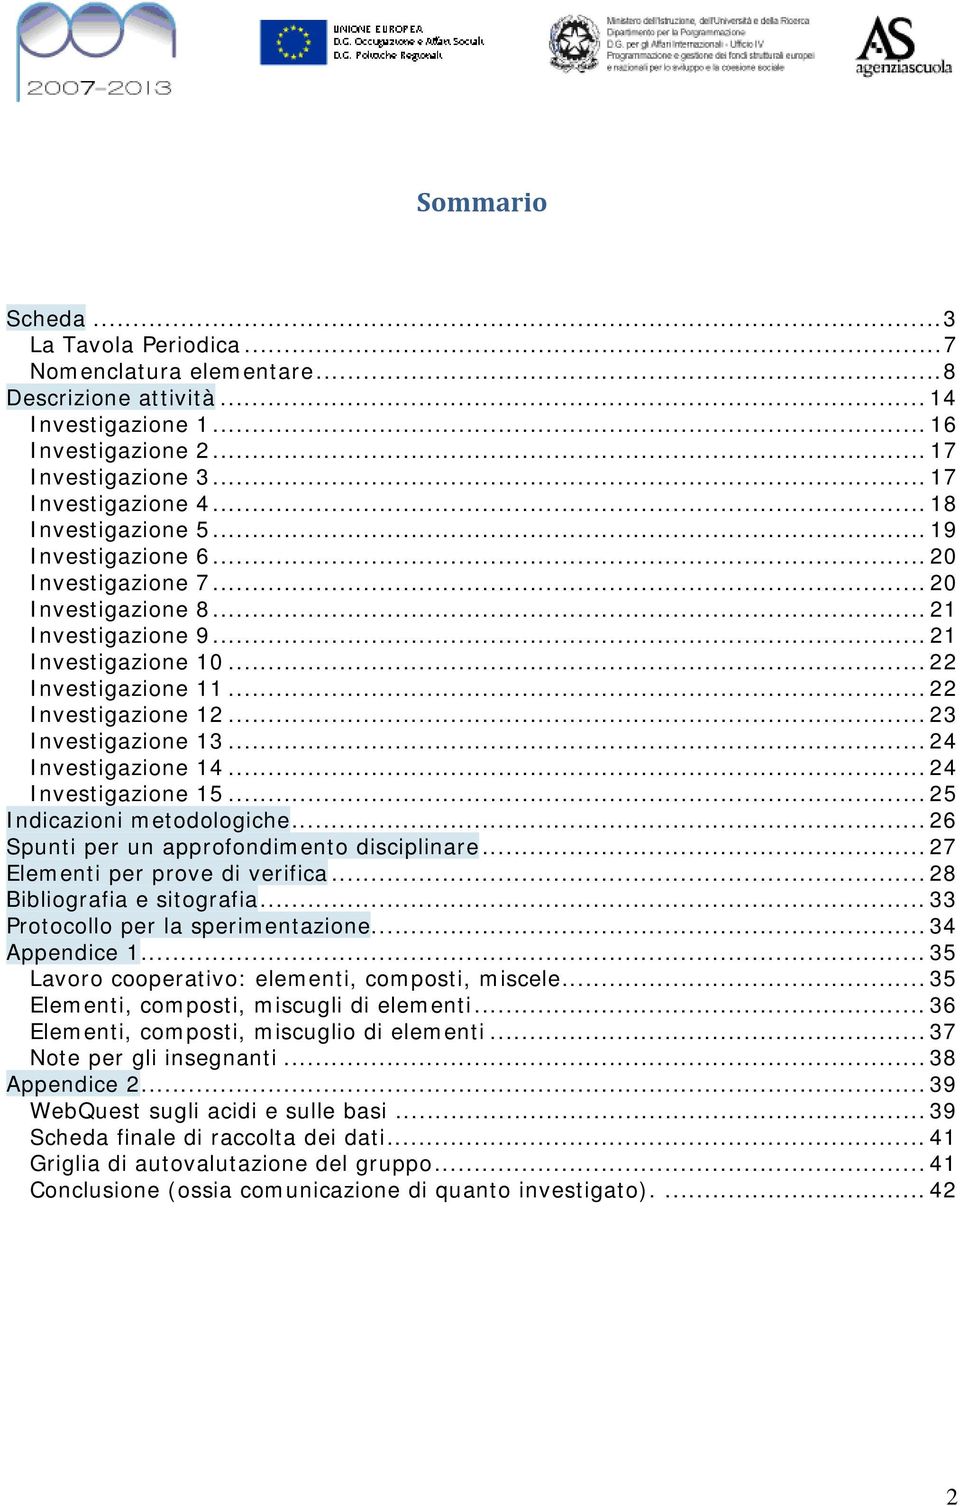 .. 23 Investigazione 13... 24 Investigazione 14... 24 Investigazione 15... 25 Indicazioni metodologiche... 26 Spunti per un approfondimento disciplinare... 27 Elementi per prove di verifica.